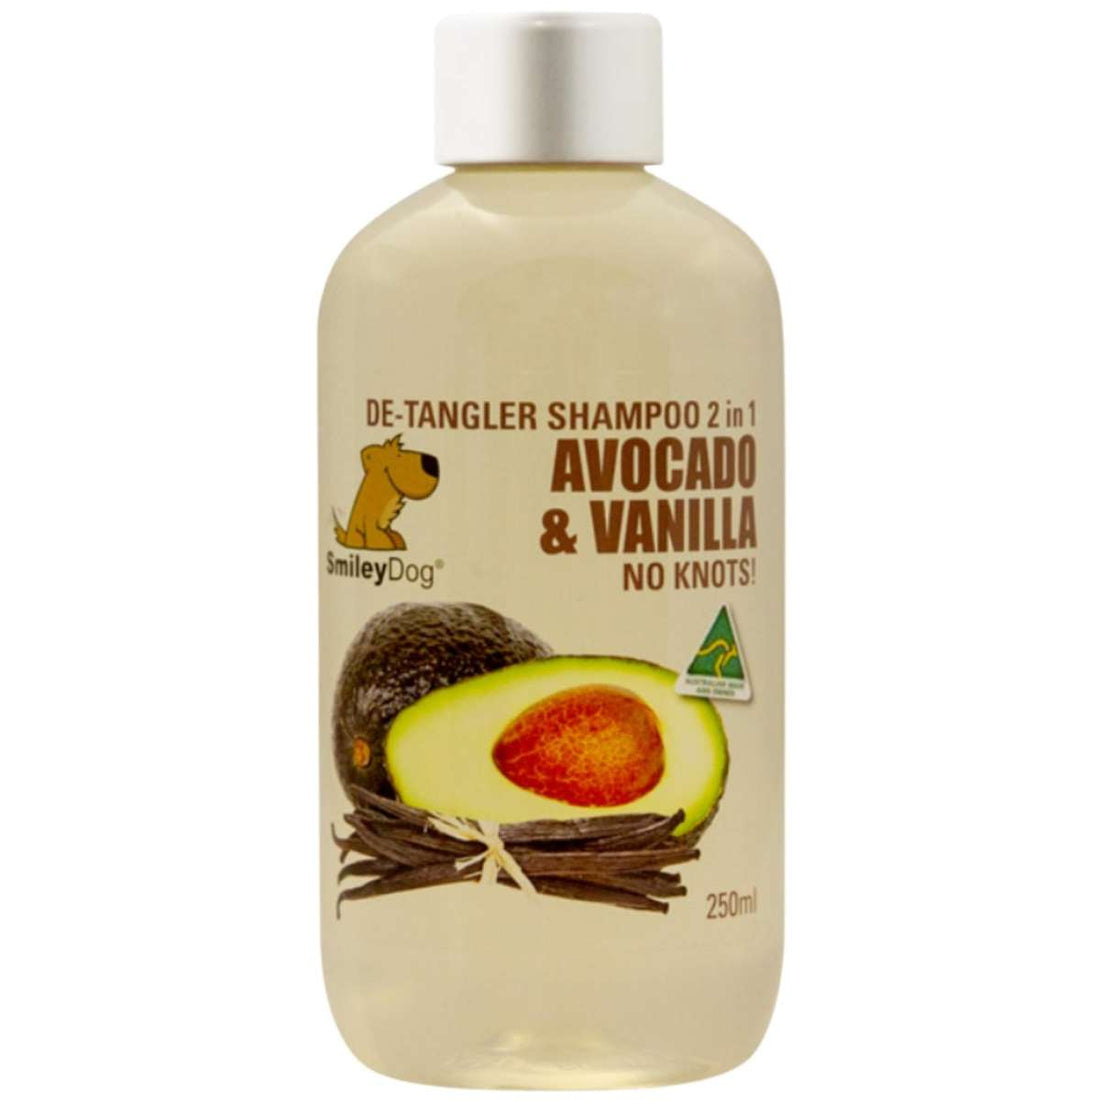 Smiley Dog Natural Avocado & Vanilla De-tangler Pet Shampoo 250ml